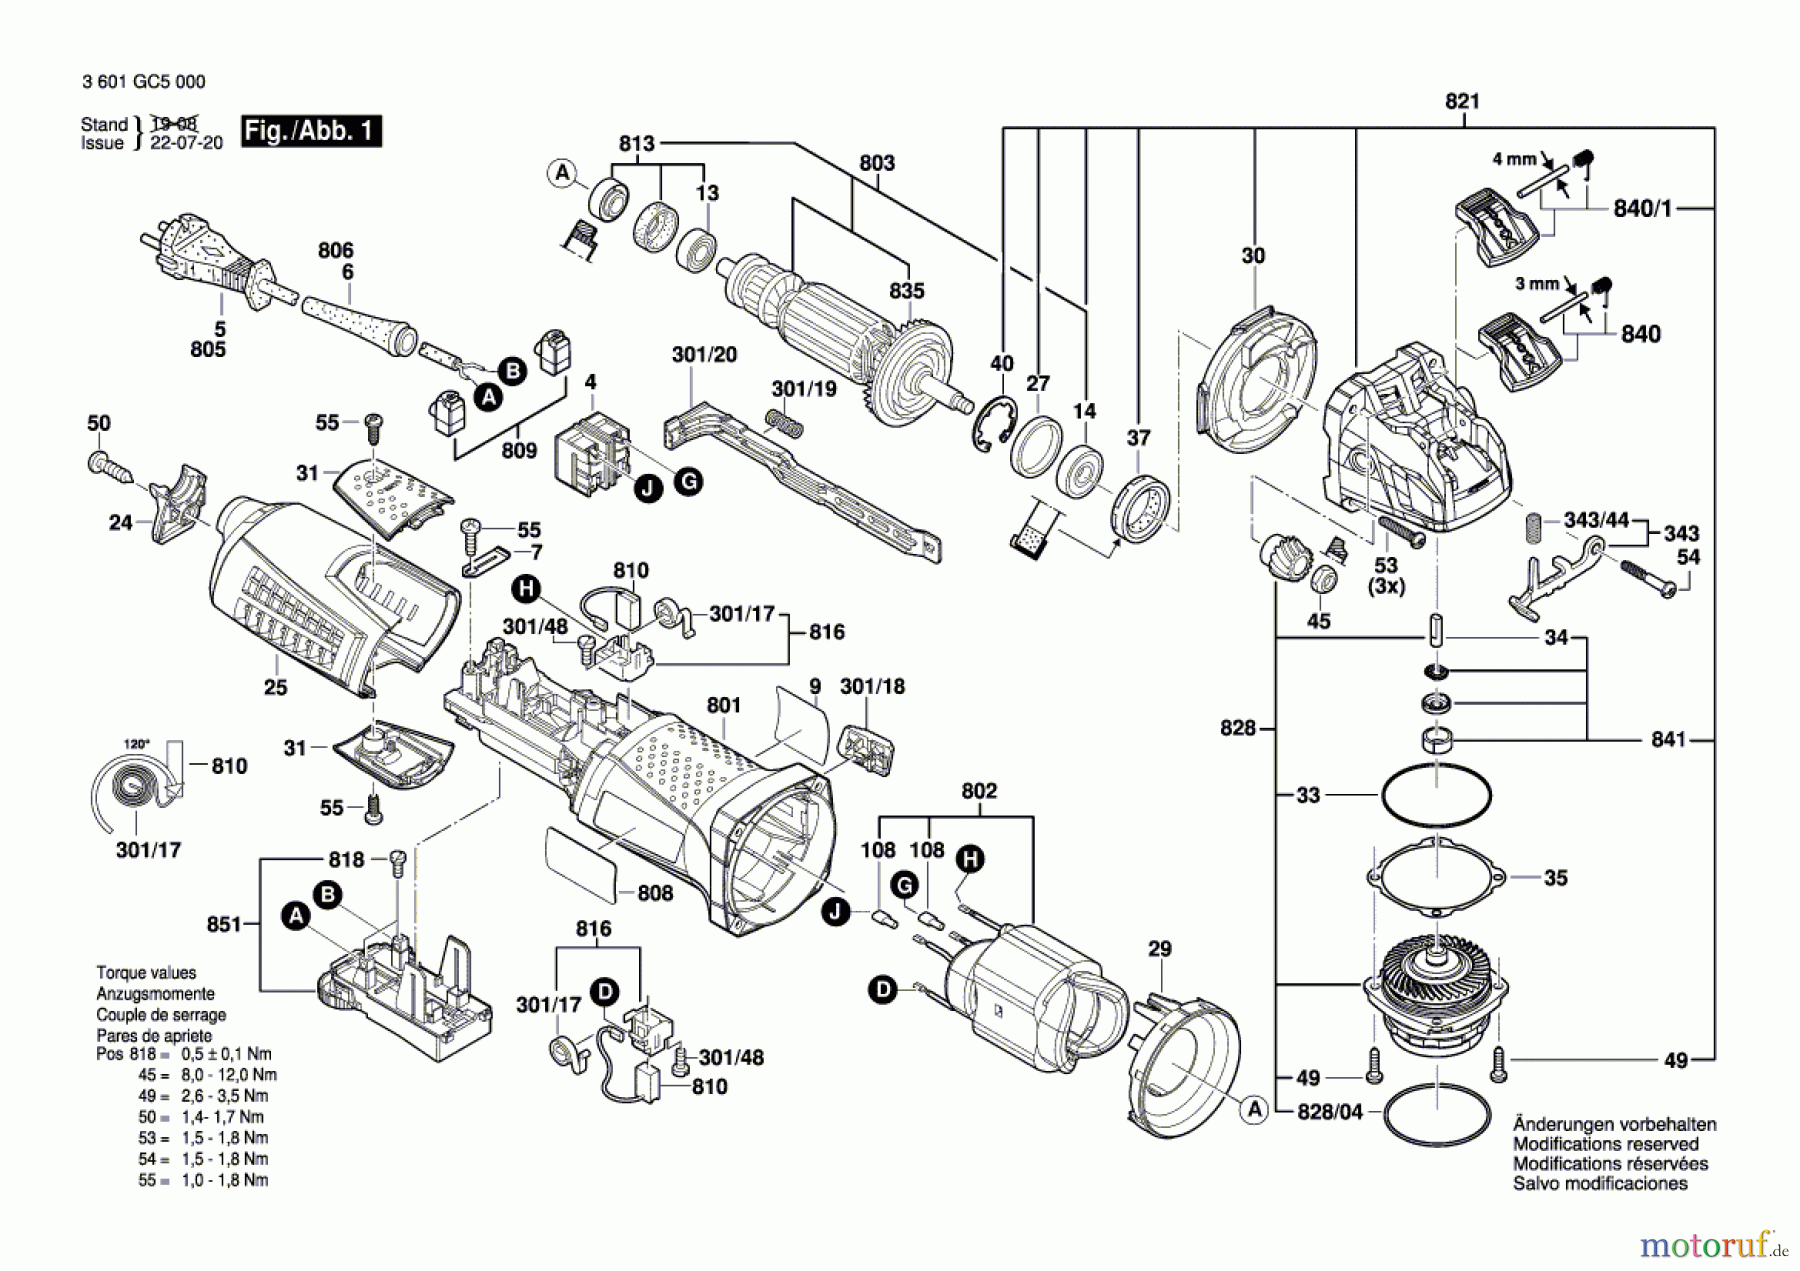  Bosch Werkzeug Winkelschleifer GWX 17-125 S Seite 1